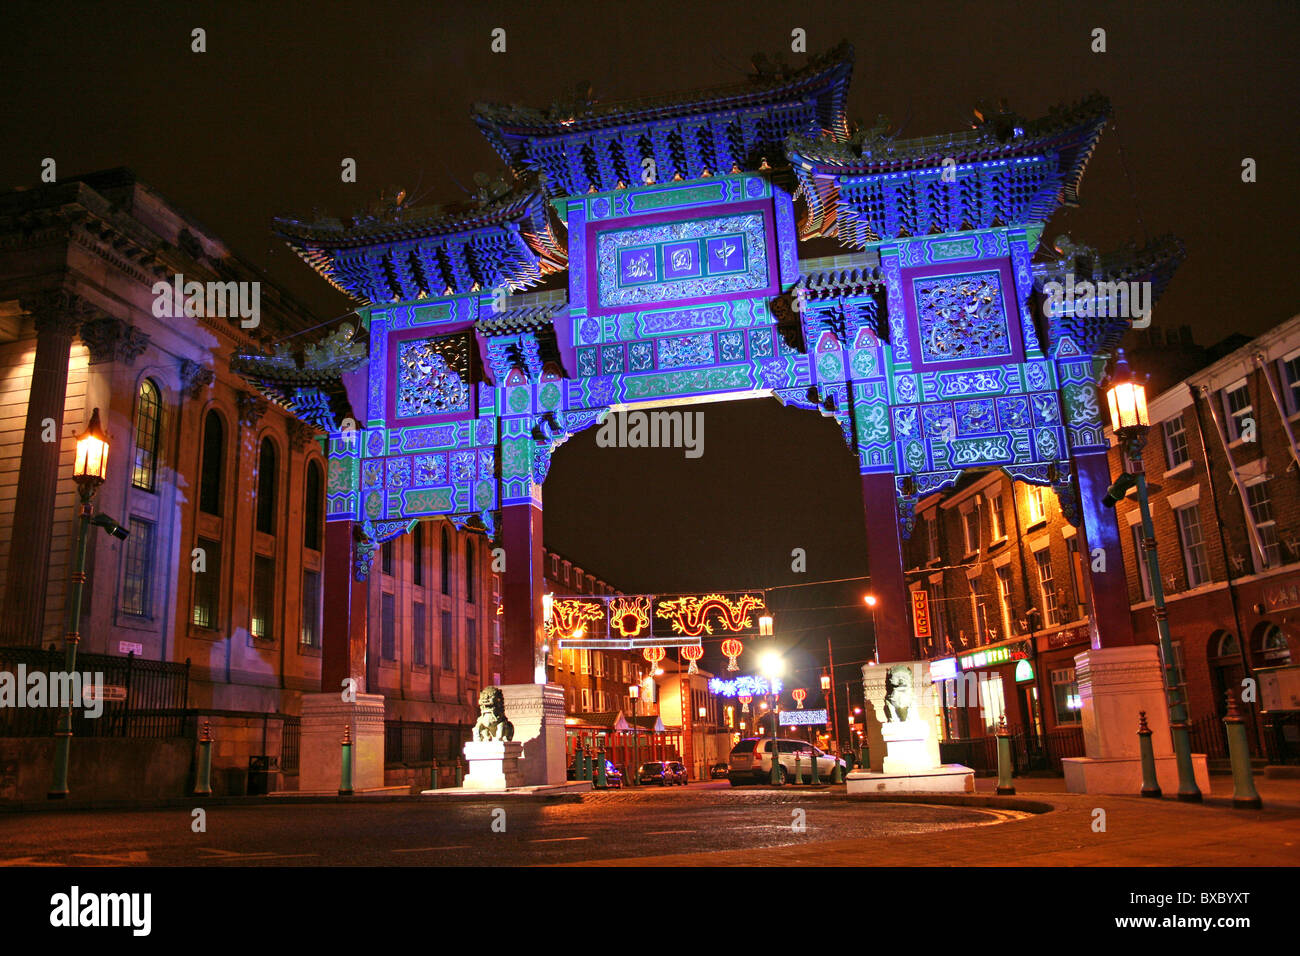 El arco chino iluminado en la noche, Chinatown, Liverpool, Merseyside, REINO UNIDO Foto de stock